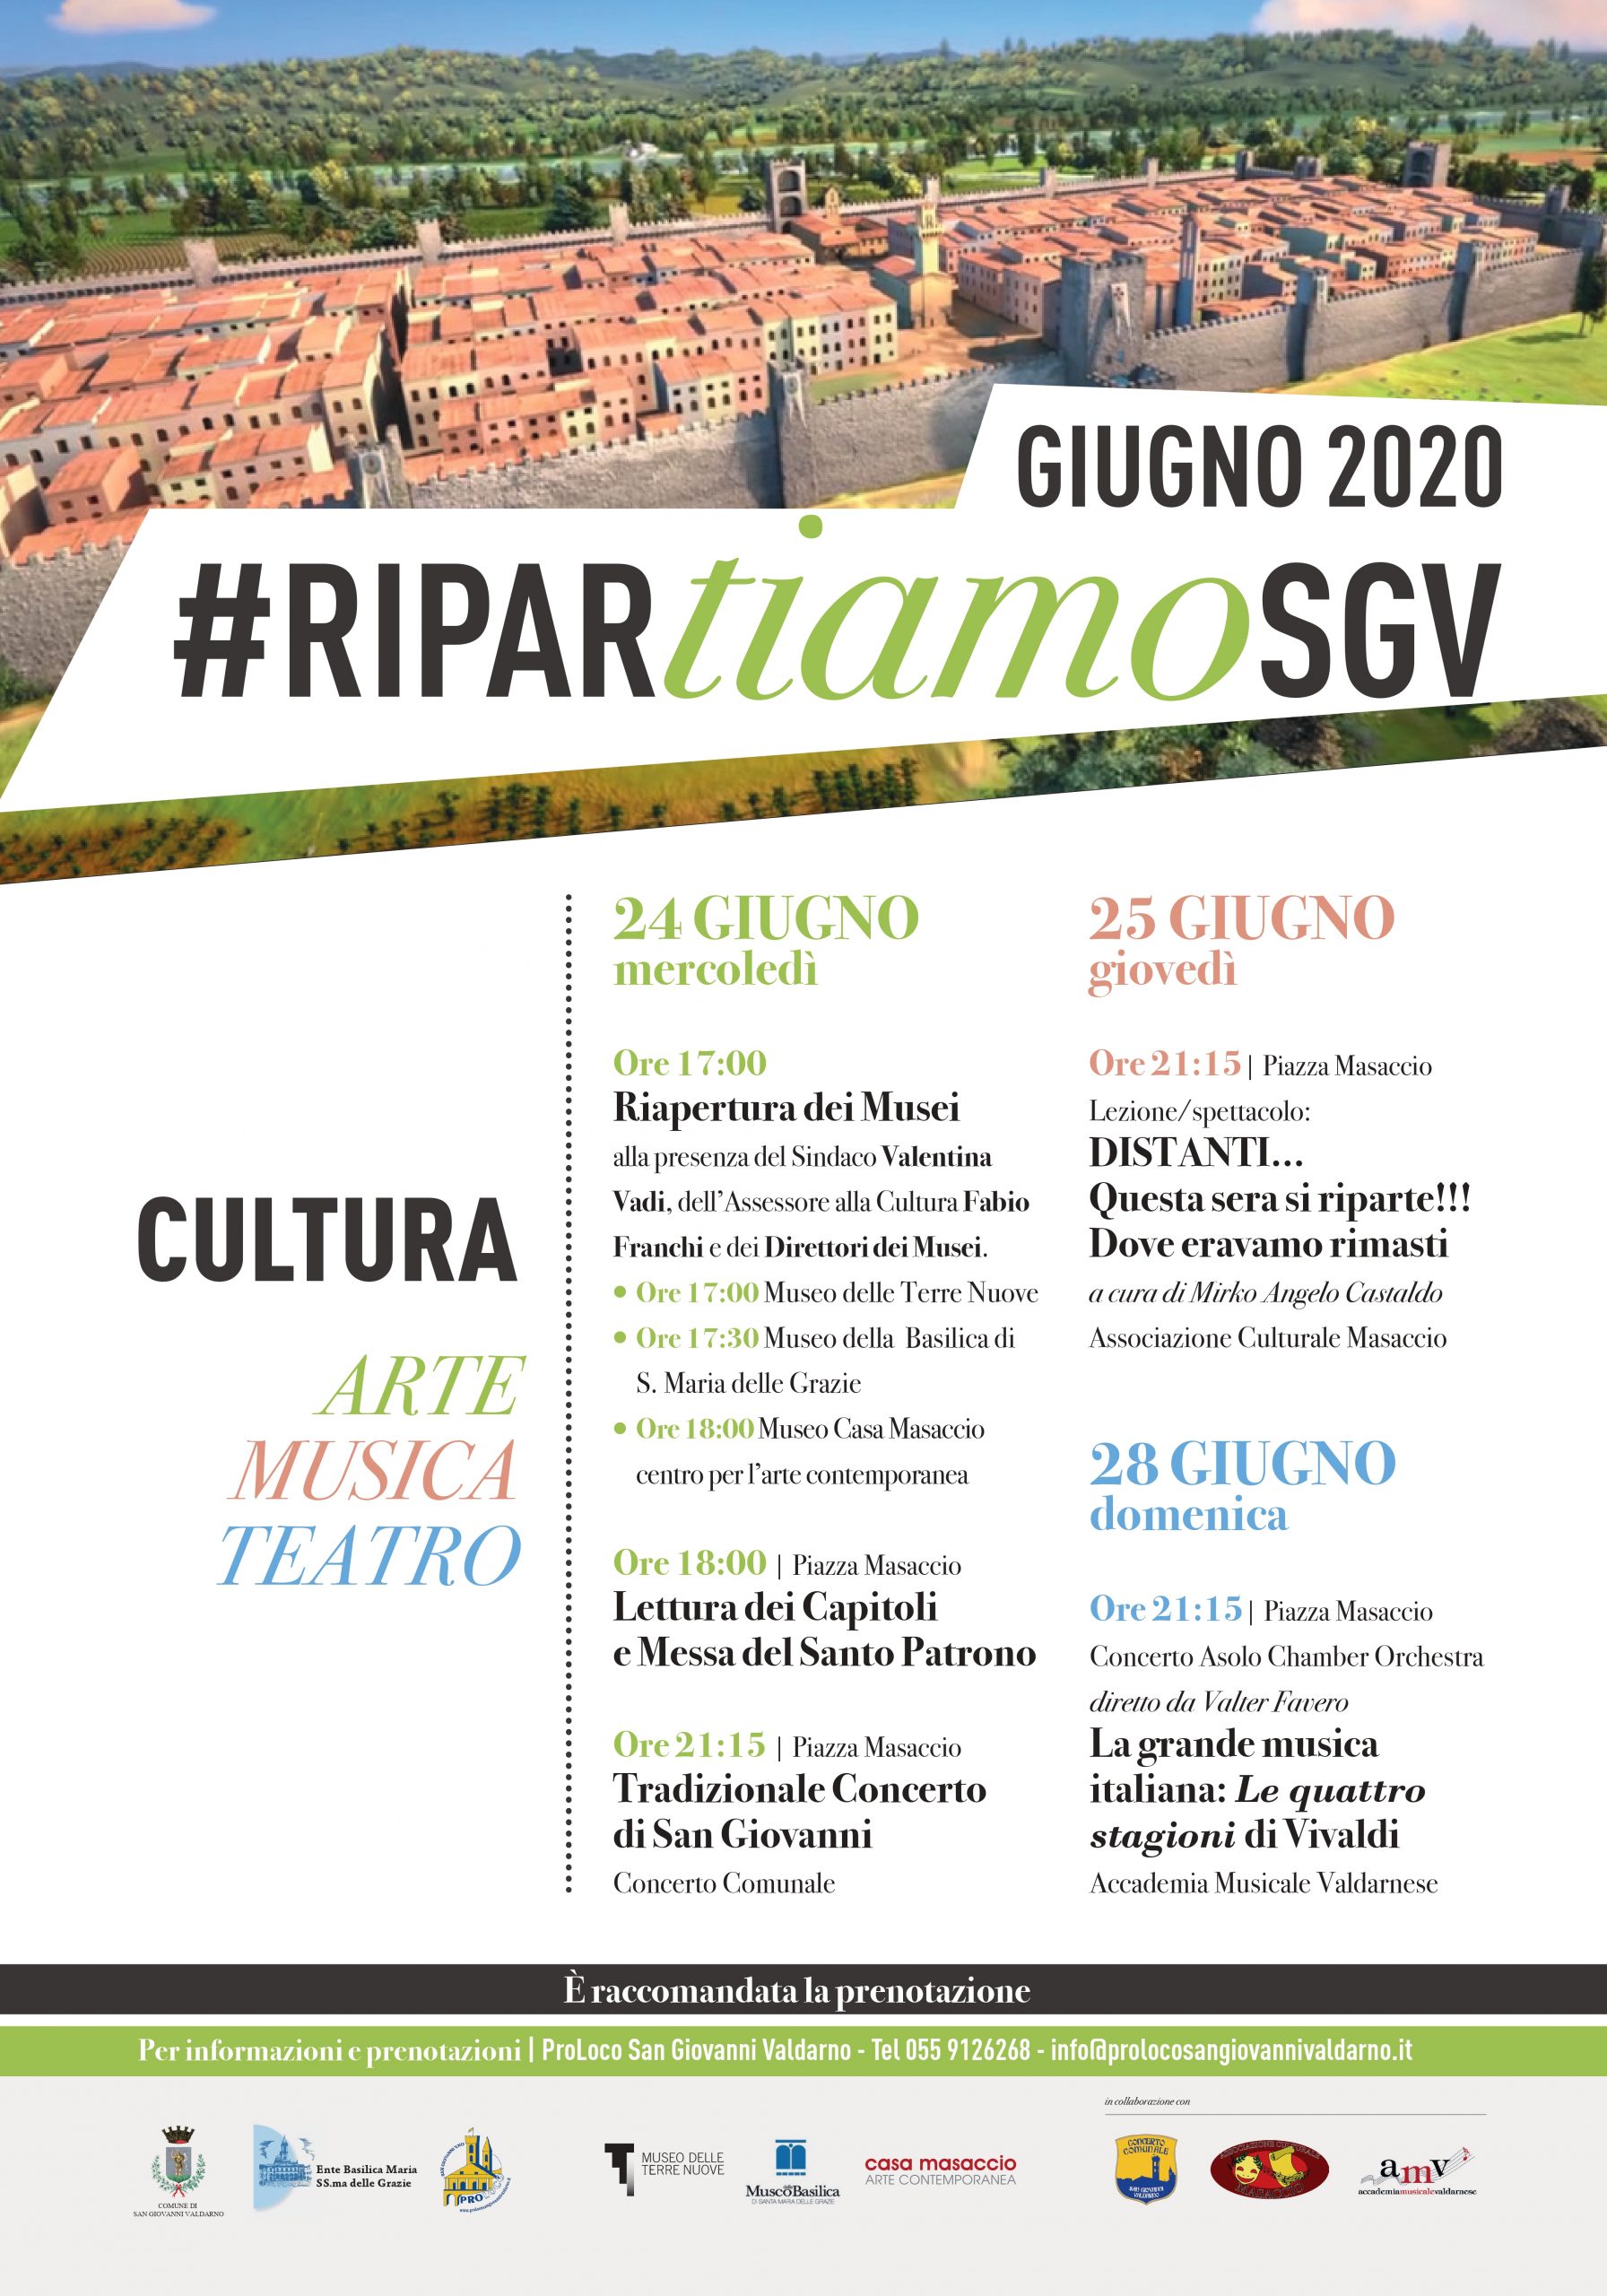 #riparTIAMO SGV: le iniziative culturali di inizio estate a San Giovanni Valdarno, tra arte, musica e teatro